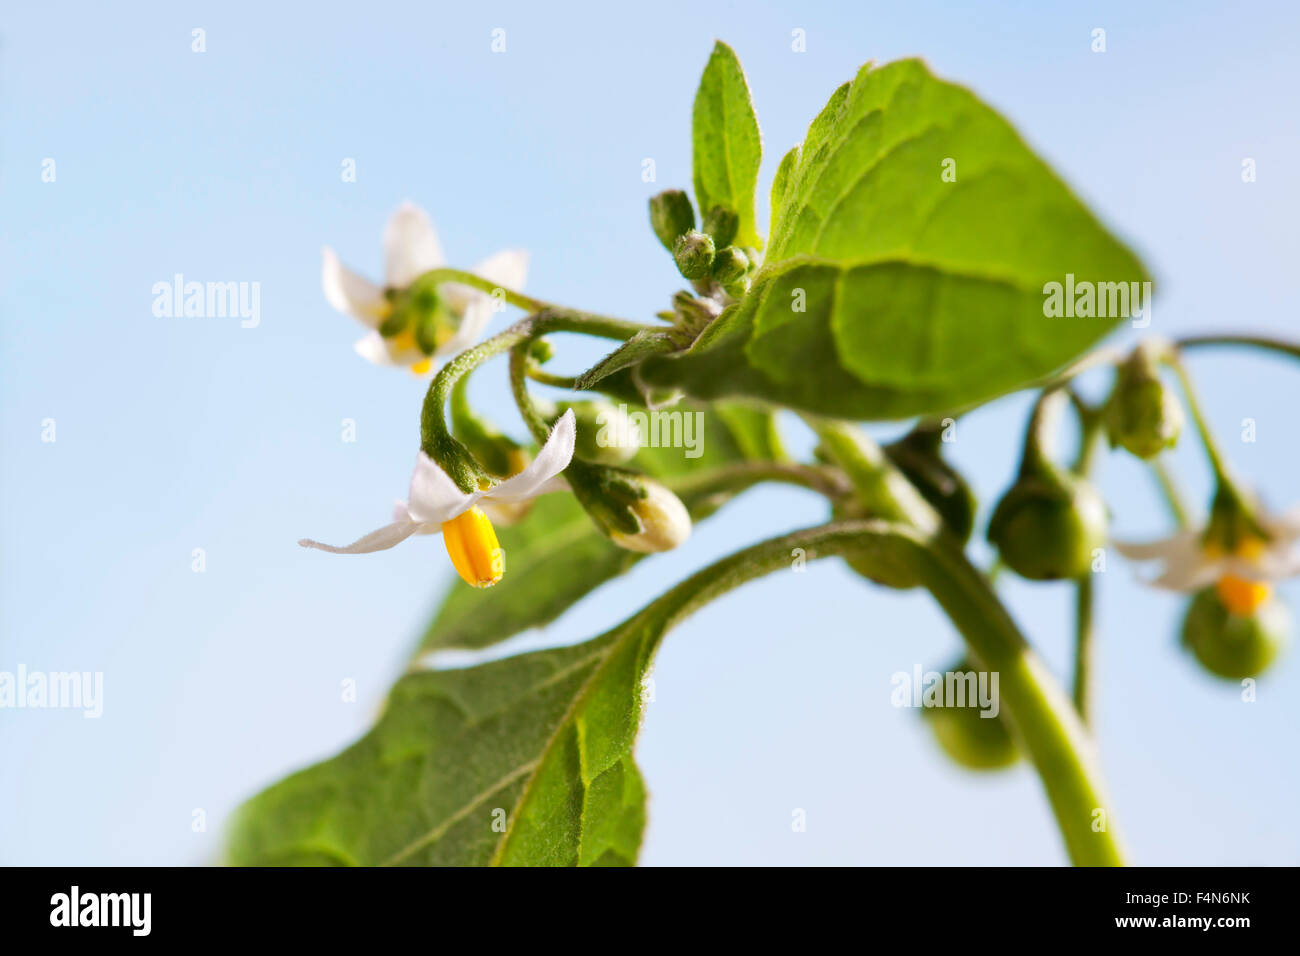 Black nightshade, Solanum nigrum, poisonous plant, blossoms Stock Photo